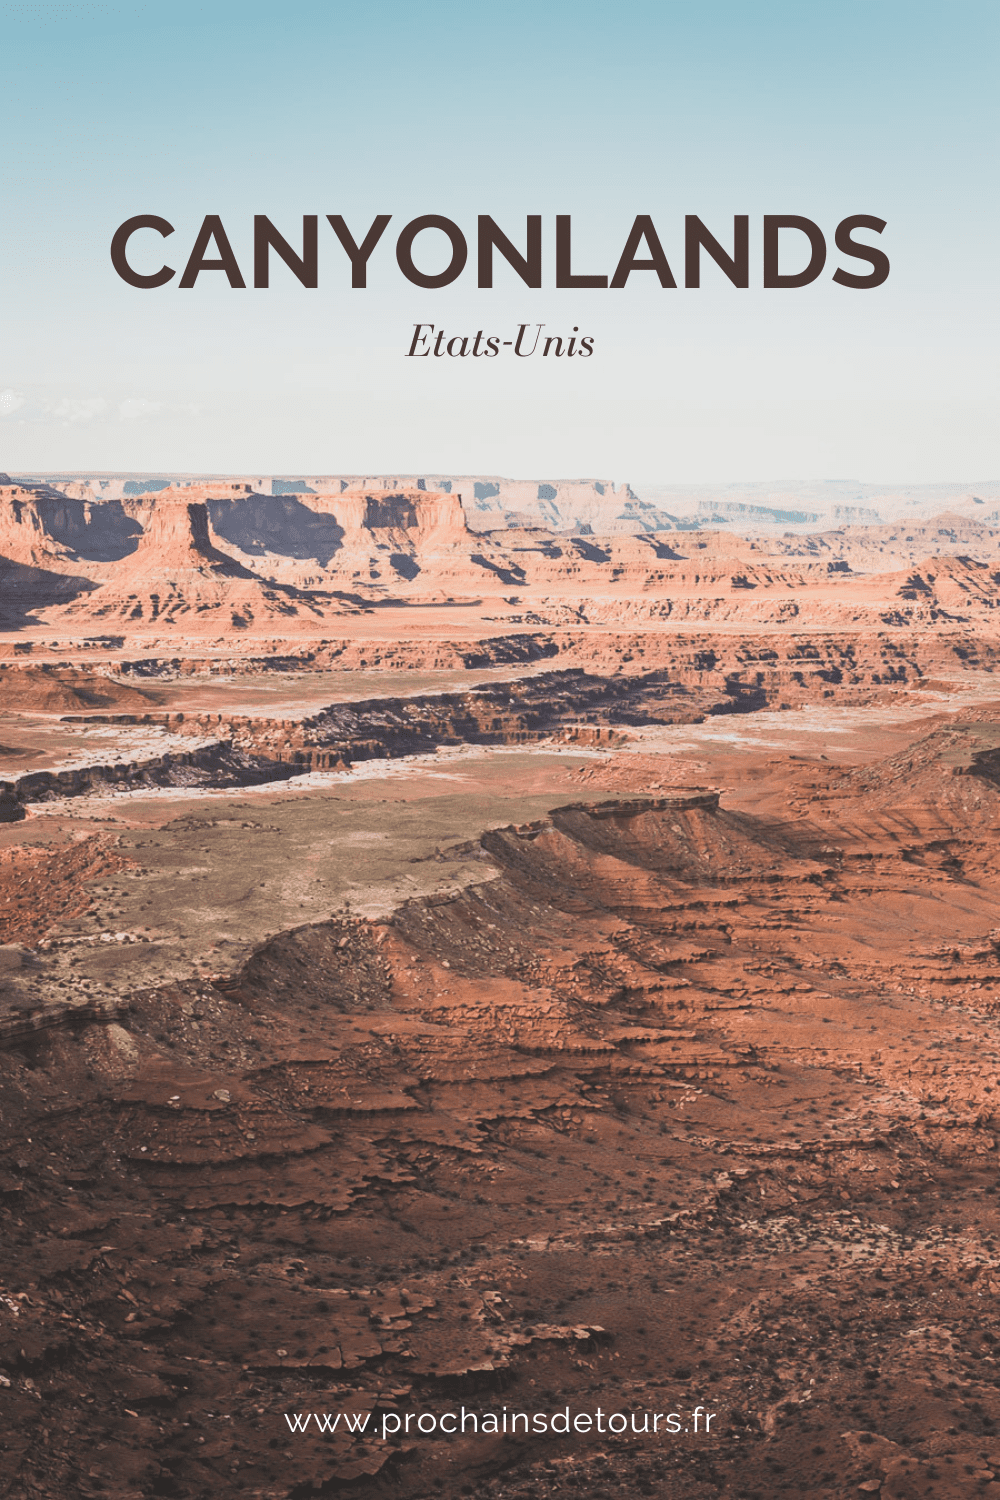 À l'extrémité ouest de l'Amérique se trouve le parc national de Canyonlands, un paysage à couper le souffle composé de canyons de roches rouges, de mesas et de buttes. Abritant un certain nombre de canyons vierges, ce parc offre aux voyageurs l'occasion de découvrir le Far West dans toute sa beauté et son aventure. Rejoignez-nous pour un road trip dans l'ouest américain inoubliable et explorez le meilleur des États-Unis. Découvrez notre guide sur notre voyage à Canyonlands National Park.